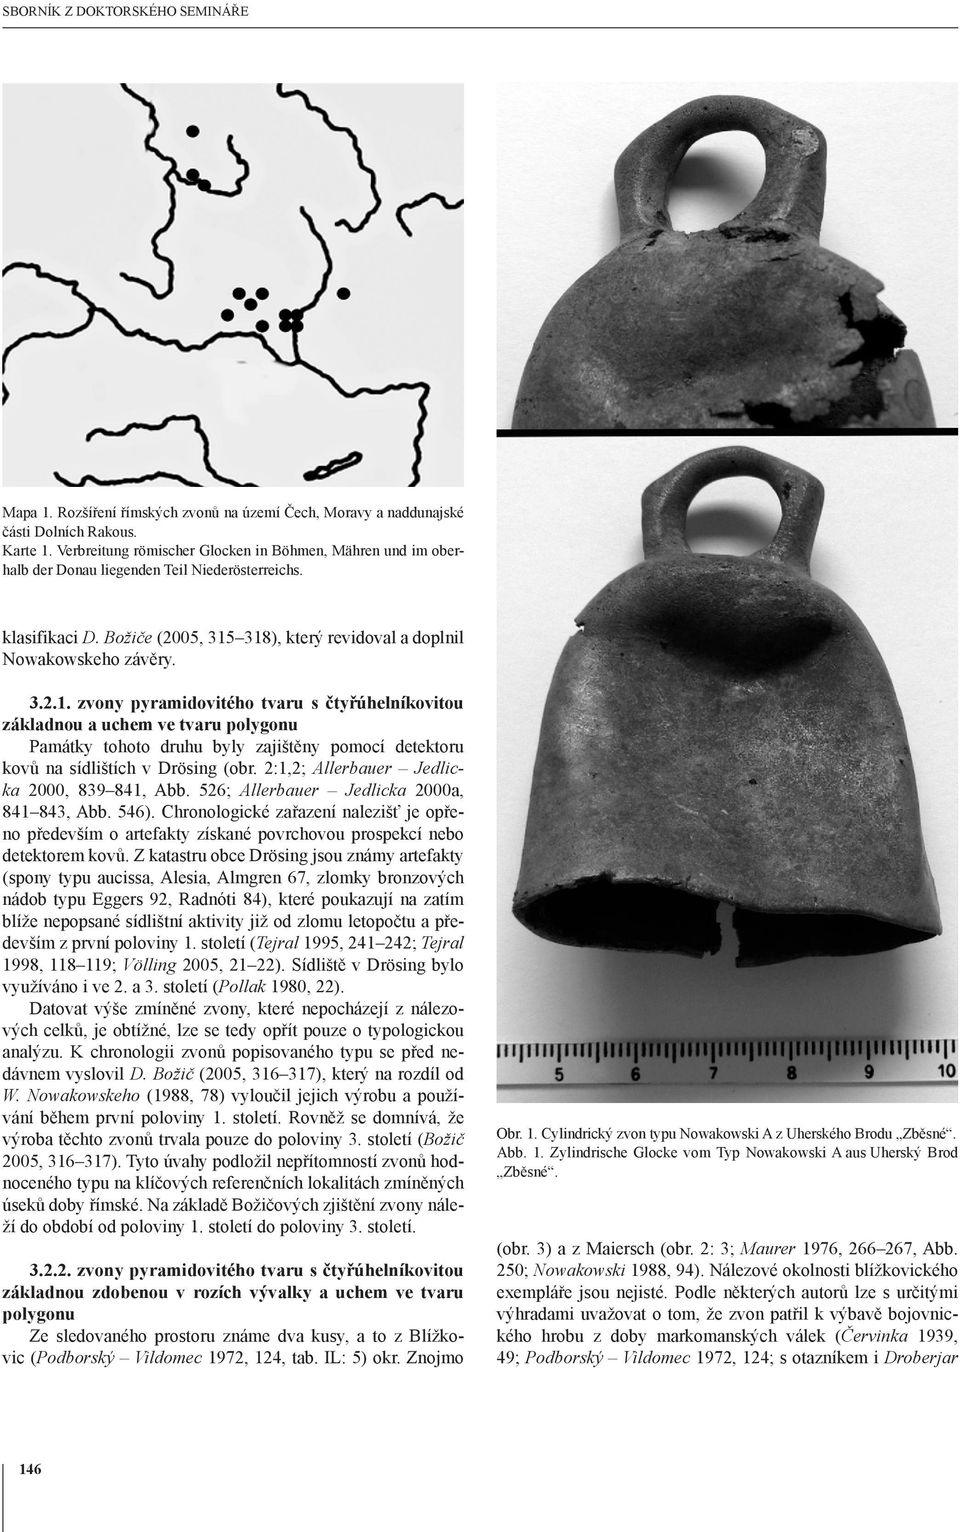 318), který revidoval a doplnil Nowakowskeho závěry. 3.2.1. zvony pyramidovitého tvaru s čtyřúhelníkovitou základnou a uchem ve tvaru polygonu Památky tohoto druhu byly zajištěny pomocí detektoru kovů na sídlištích v Drösing (obr.